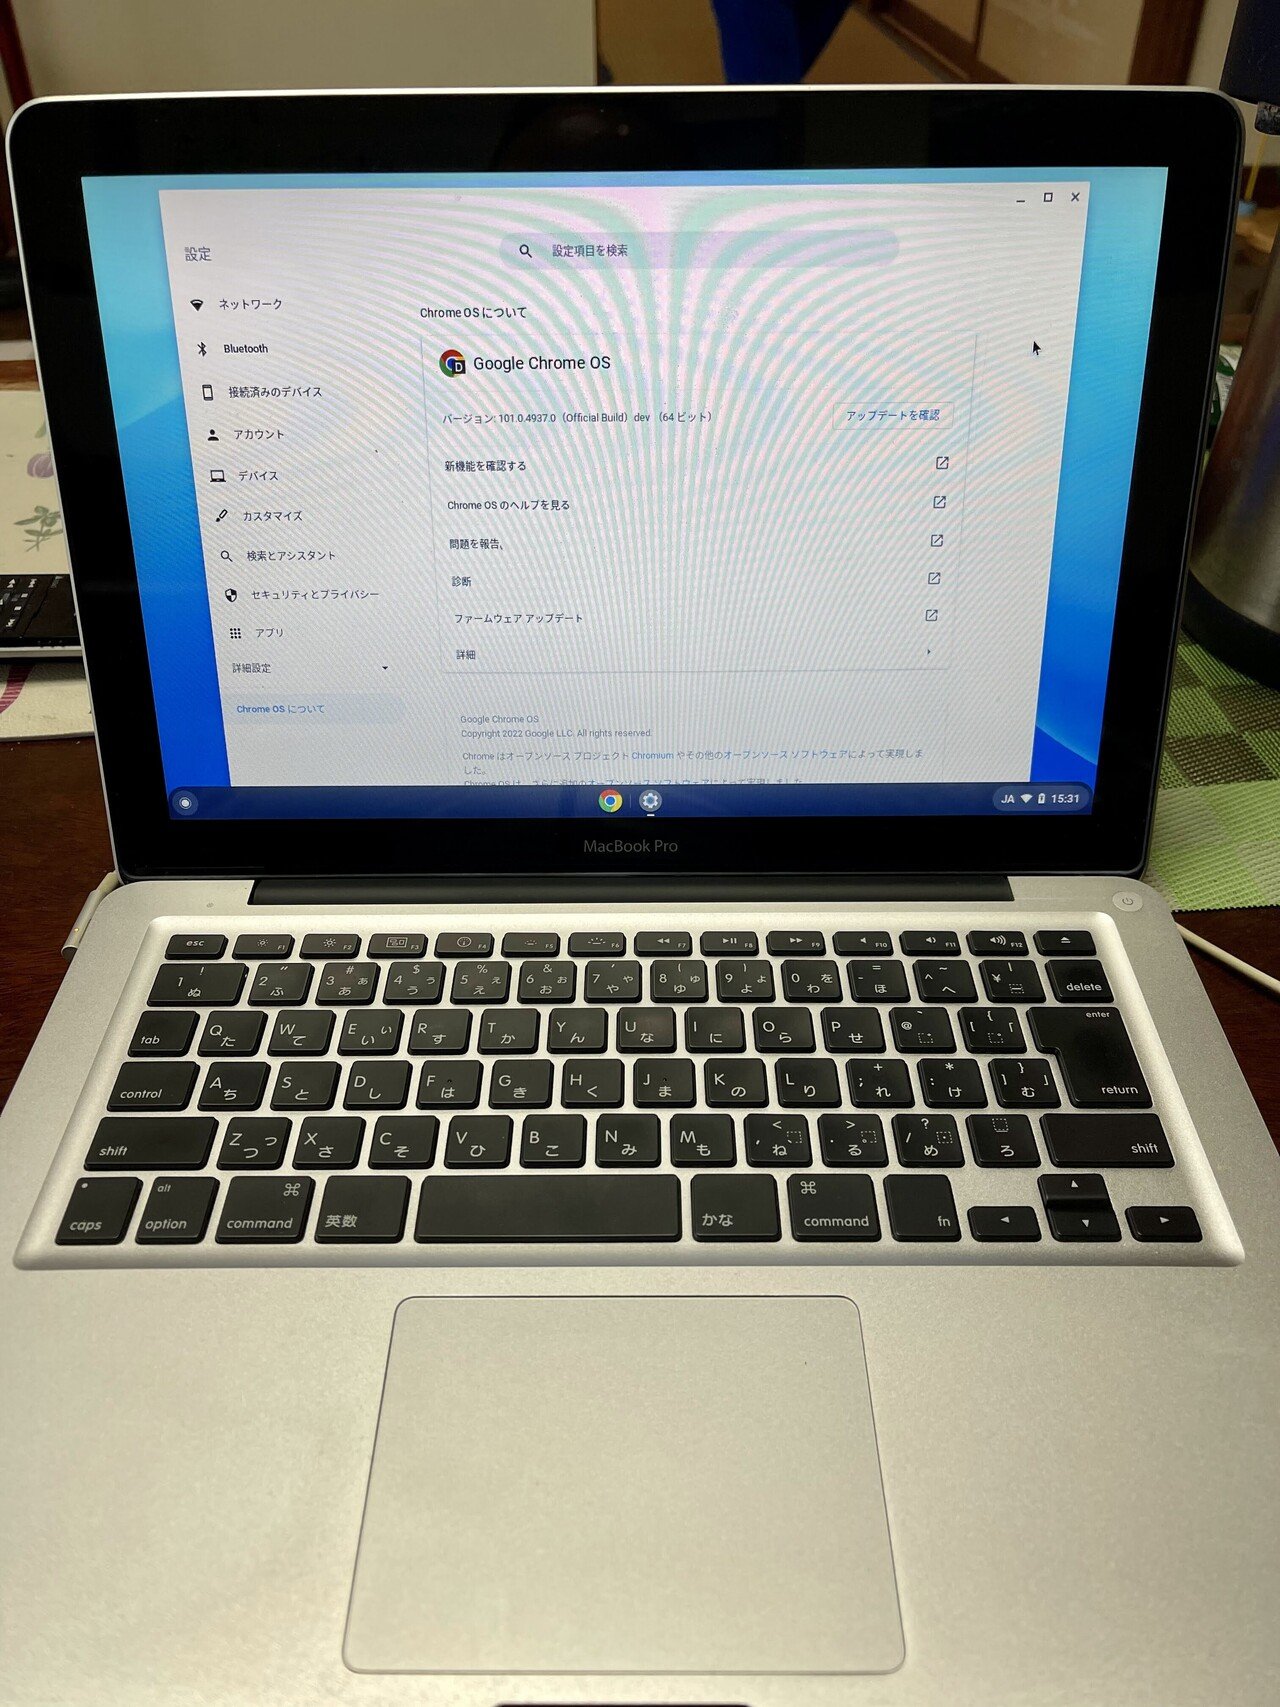 そういえば、先日実家に行った時に、MacBook Pro (13-inch, Early 2011)に、Chrome OS Flex を入れてきました。無事にインストールできました。もともと、Cloudr｜Double-K